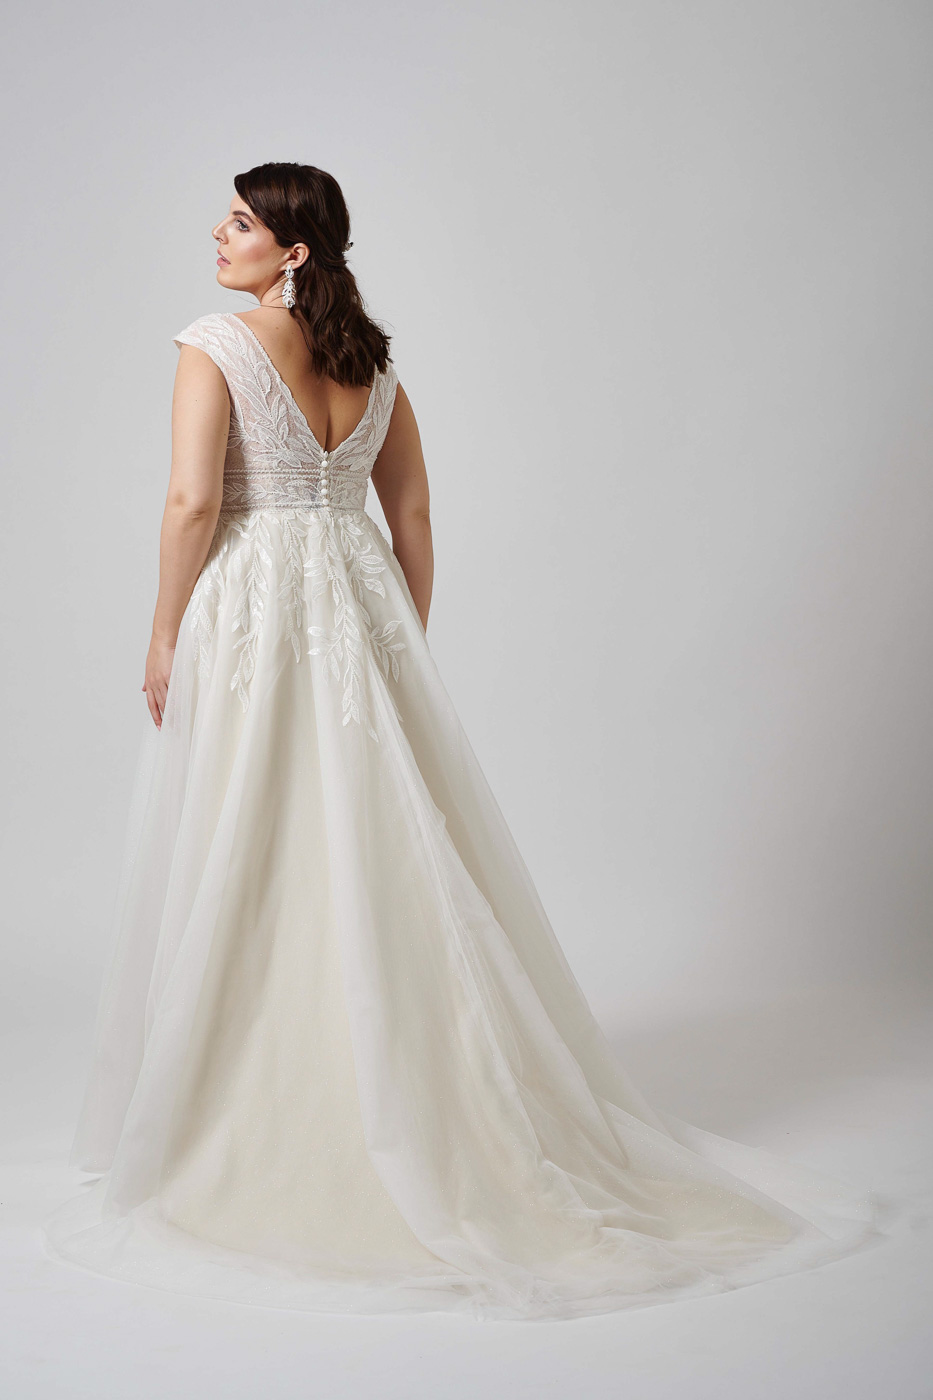 Curvy Hochzeitskleid LO-429T von Mode de Pol - Preis ab Gr. 48: 2099.- Euro